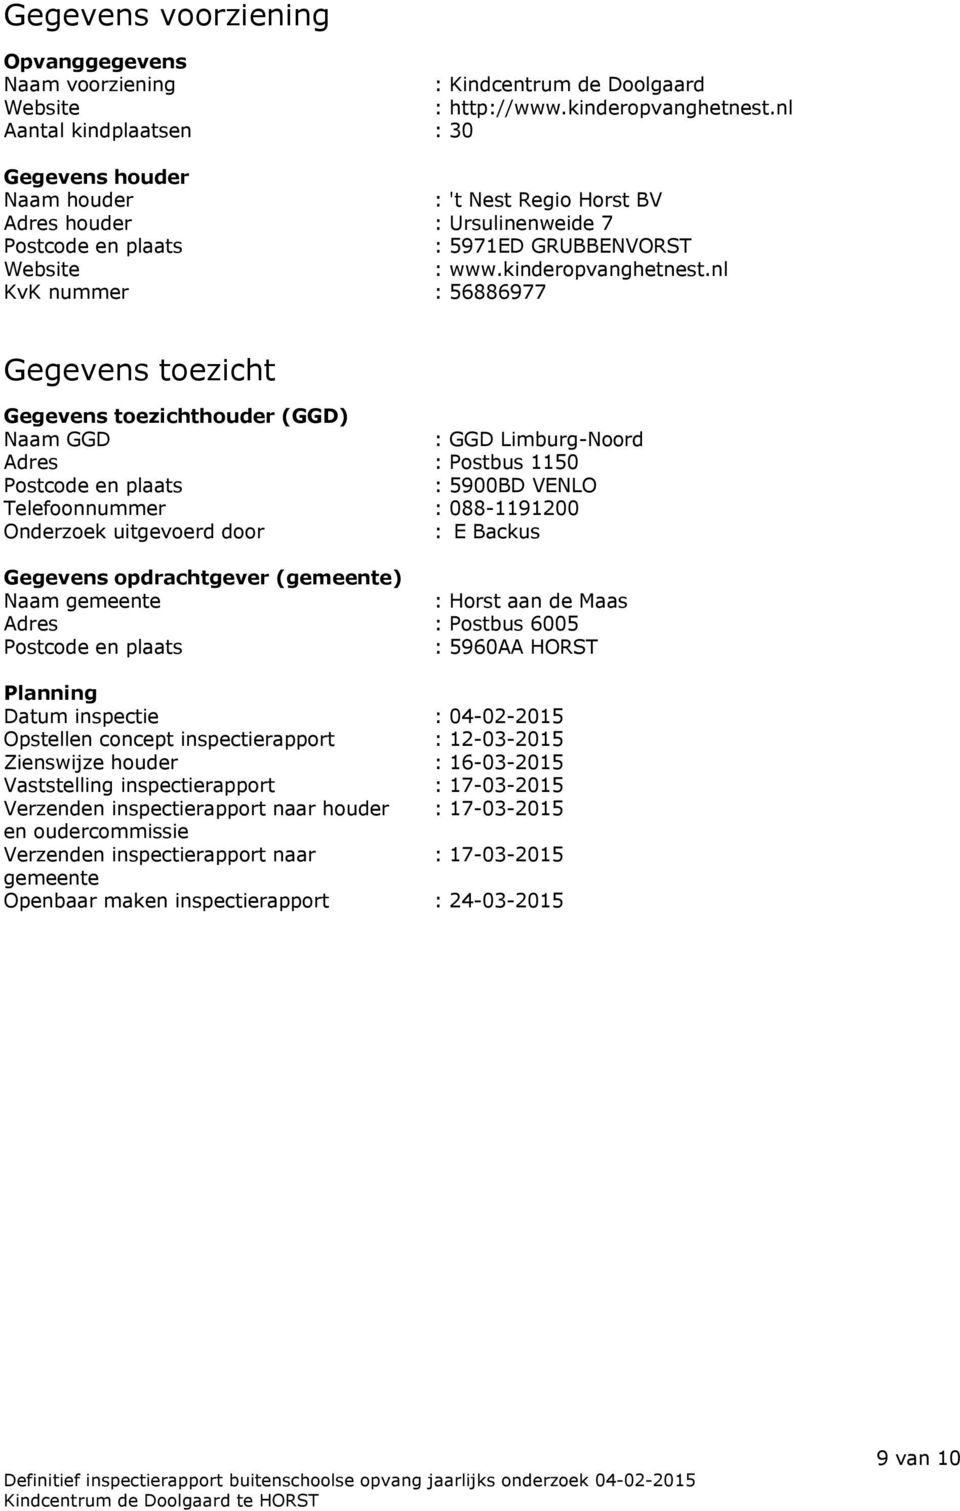 nl KvK nummer : 56886977 Gegevens toezicht Gegevens toezichthouder (GGD) Naam GGD : GGD Limburg-Noord Adres : Postbus 1150 Postcode en plaats : 5900BD VENLO Telefoonnummer : 088-1191200 Onderzoek